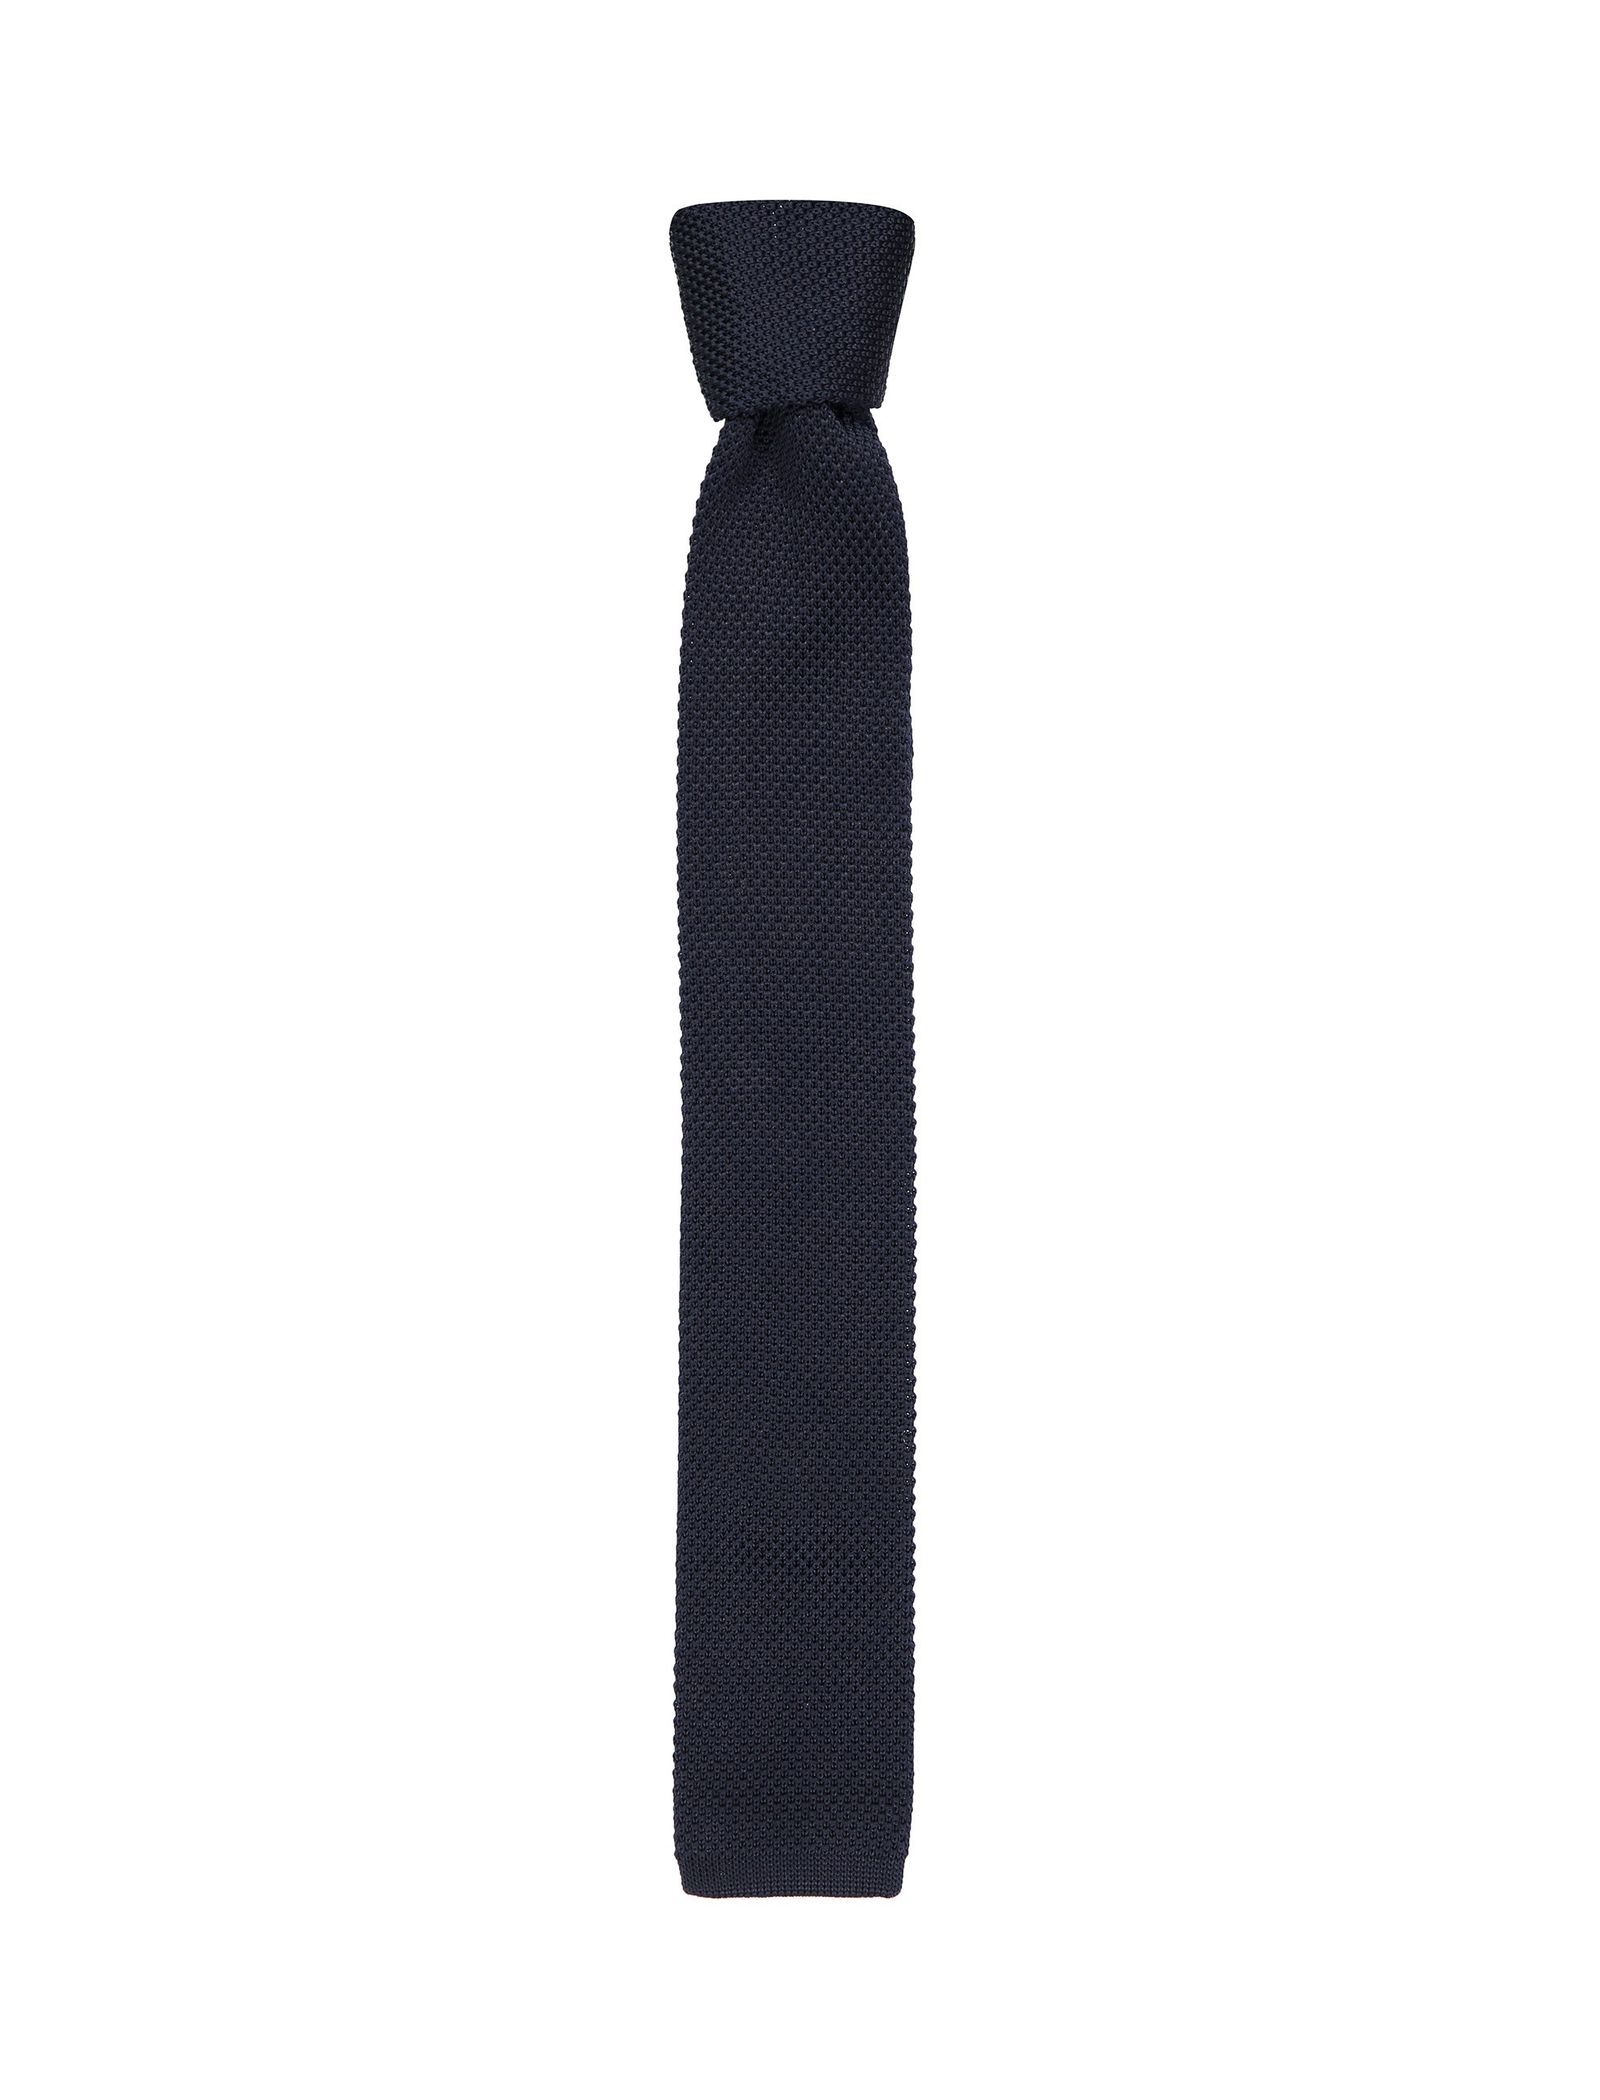 کراوات طرح دار مردانه - سلکتد - سرمه اي - 2